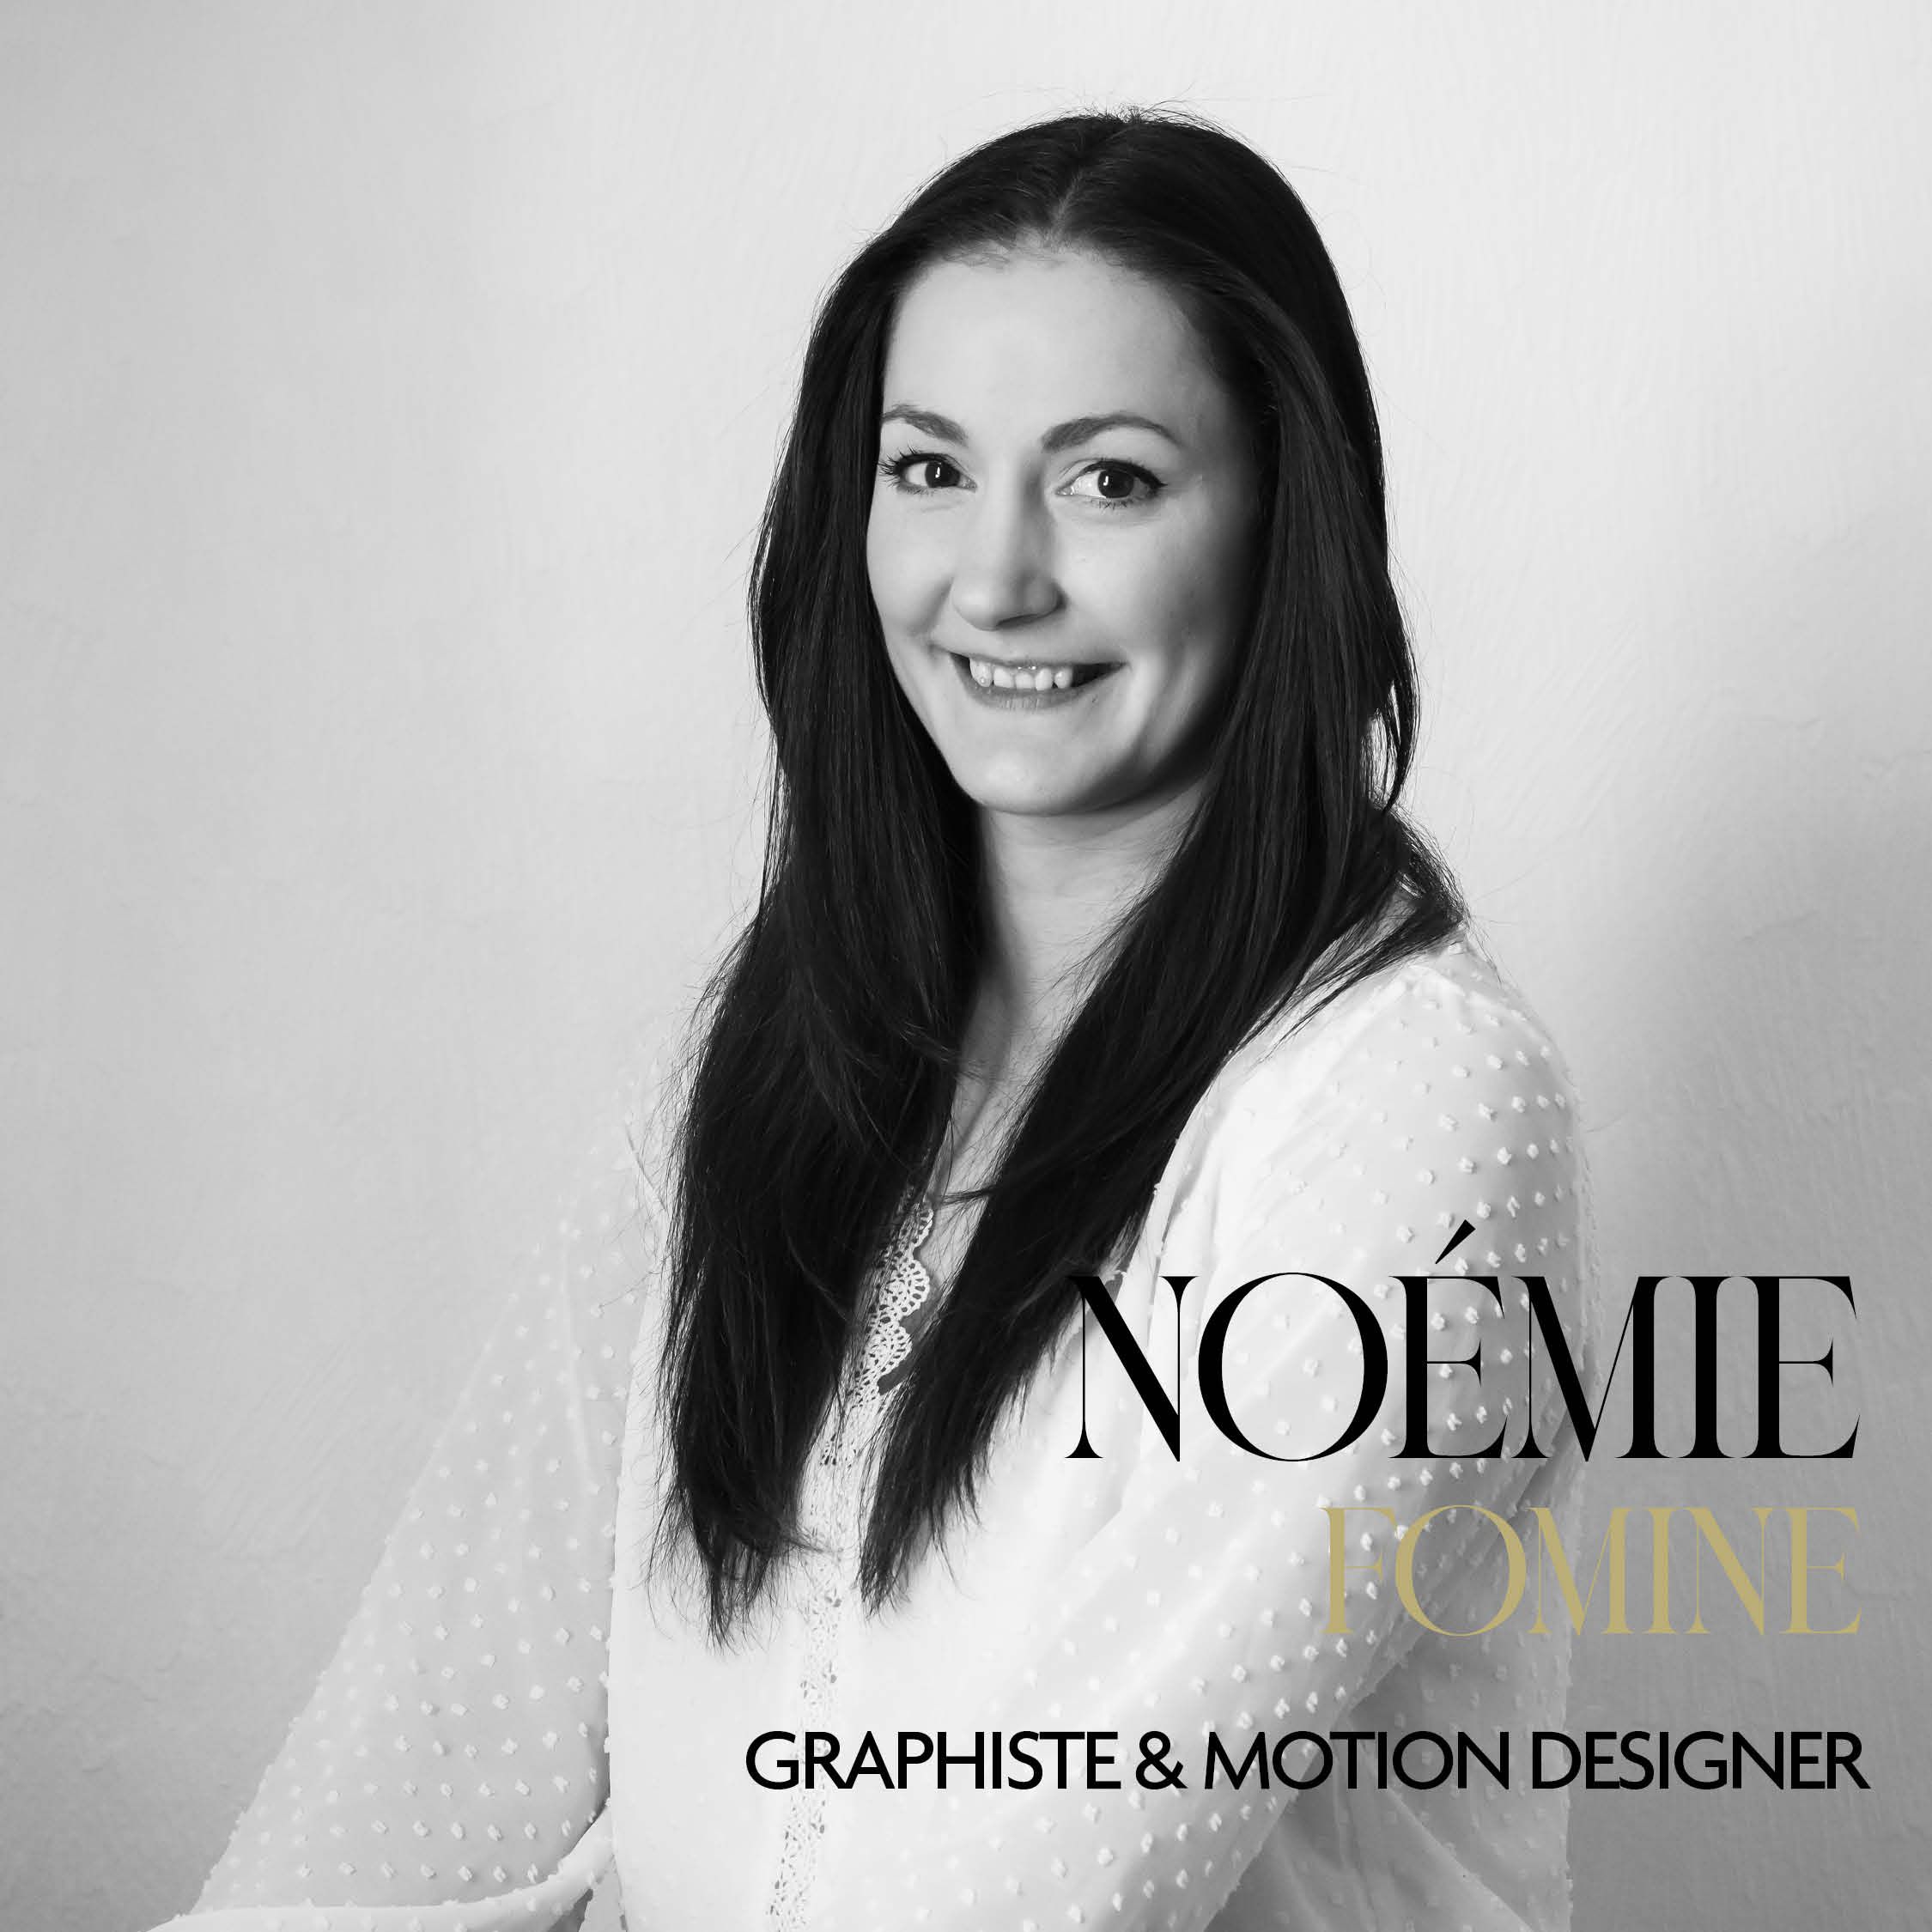 Noémie Fomine graphiste et motion designer Groupe Echo